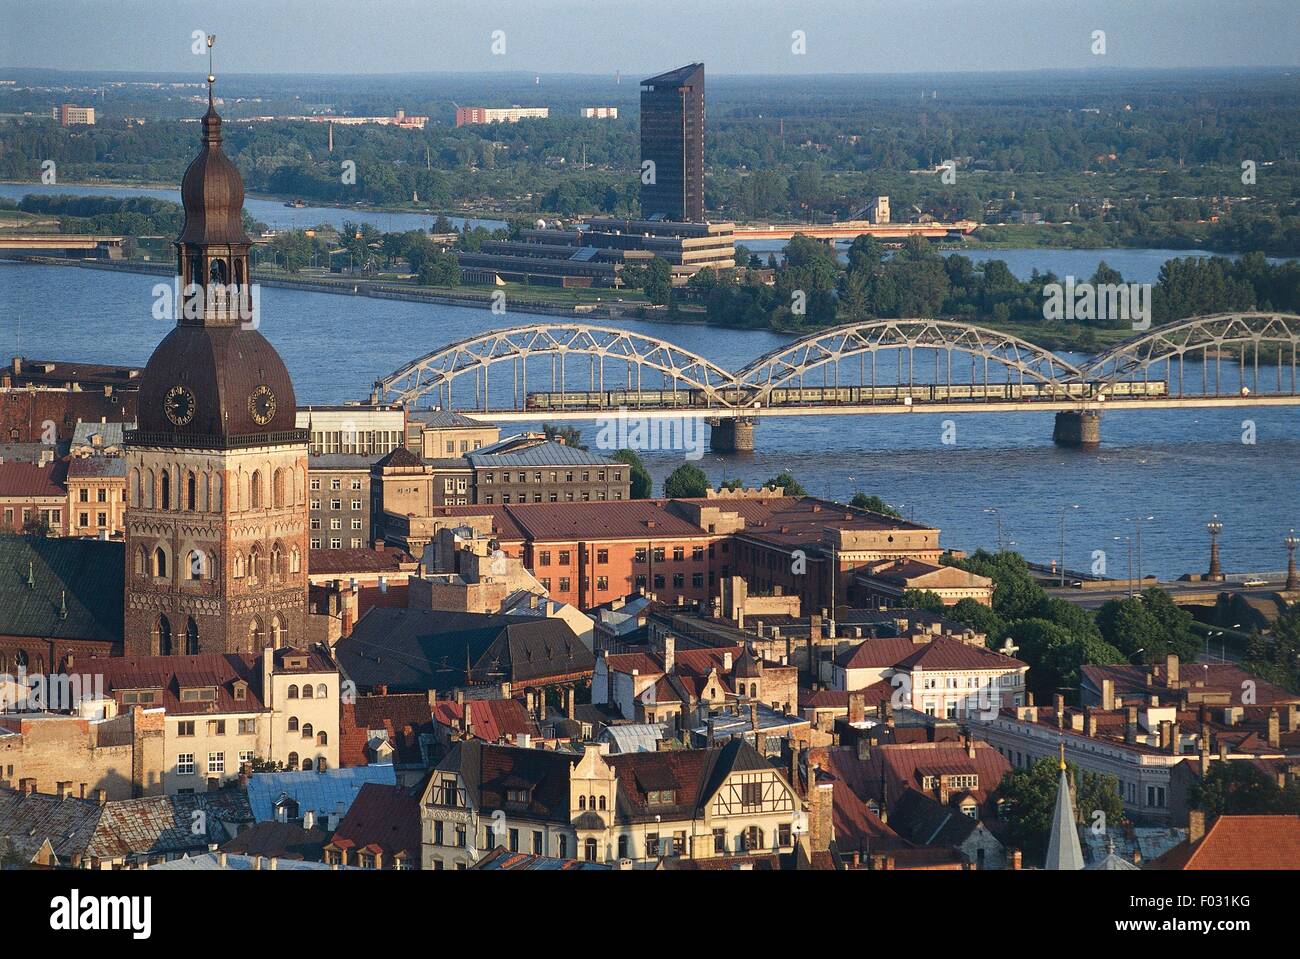 Luftaufnahme von Riga mit Doma Kathedrale (Rigas Domus) und die neue Brücke über Dwina (Daugava) - Riga Altstadt (UNESCO-Welterbe, 1997), Lettland Stockfoto